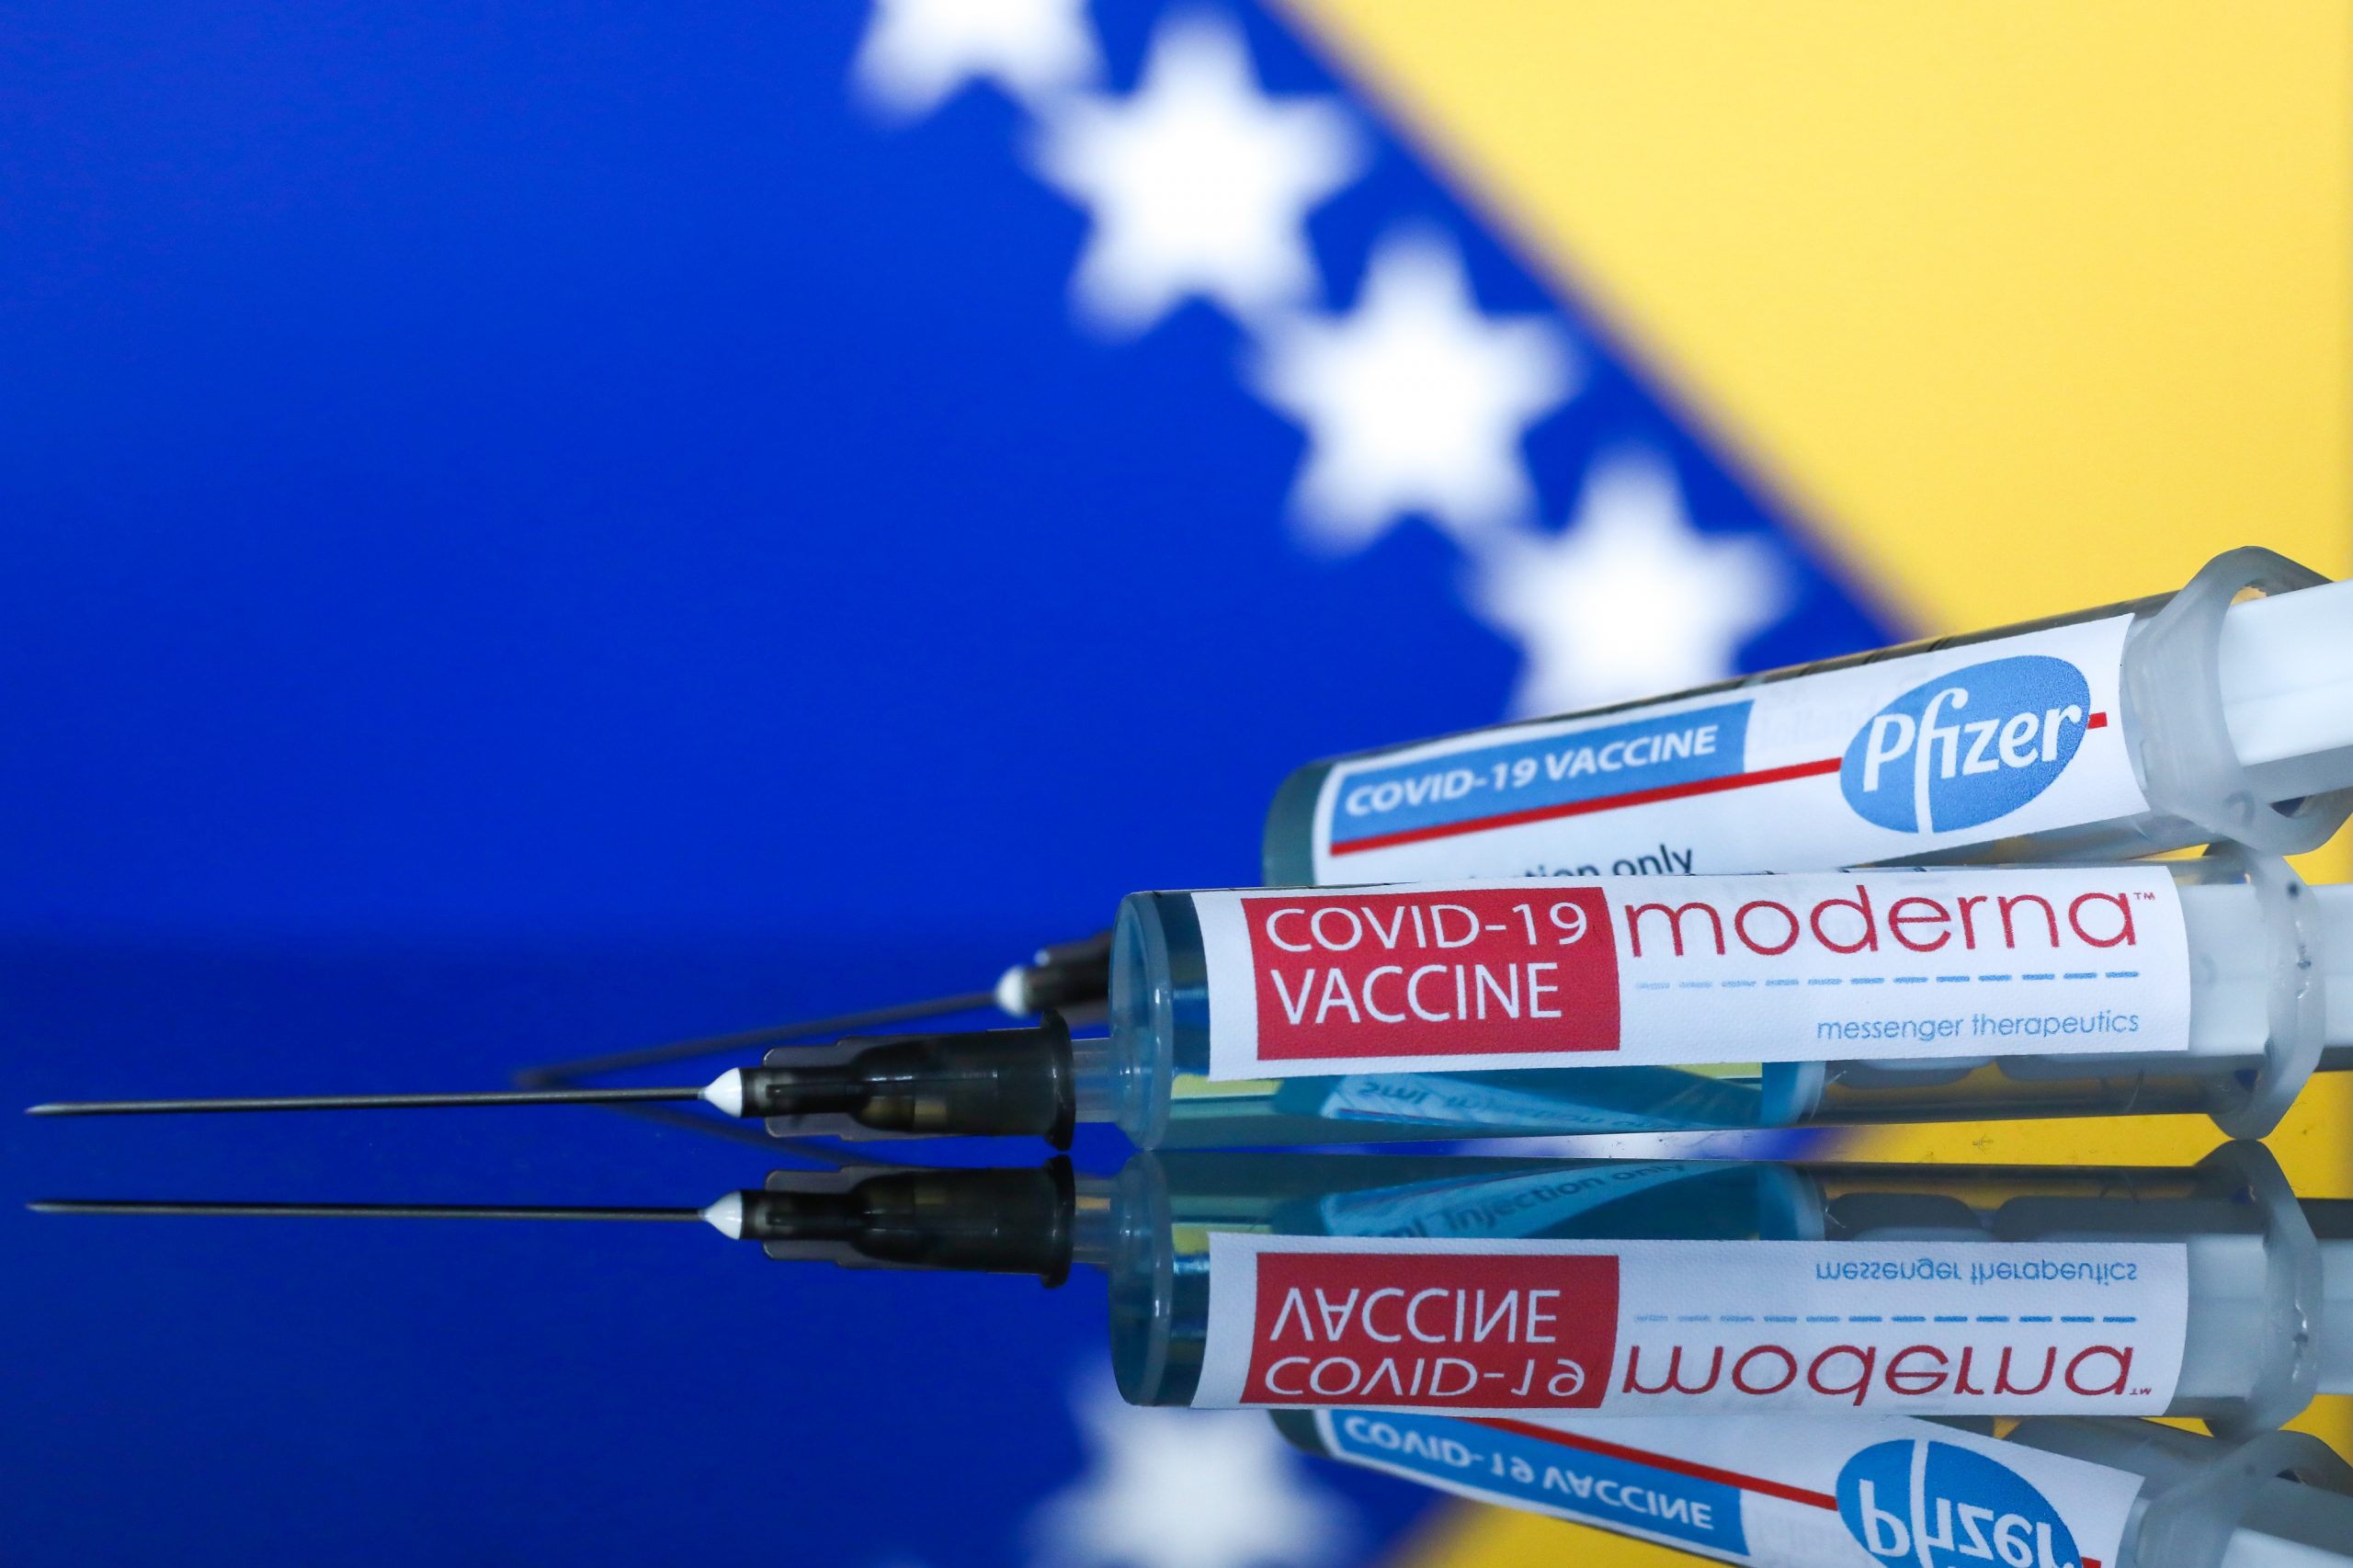 03.12.2020., Sarajevo, Bosna i Hercegovina  - Ilustracije Pfizer i Moderna cjepiva protiv virusa Covid-19.
Photo: Armin Durgut/PIXSELL